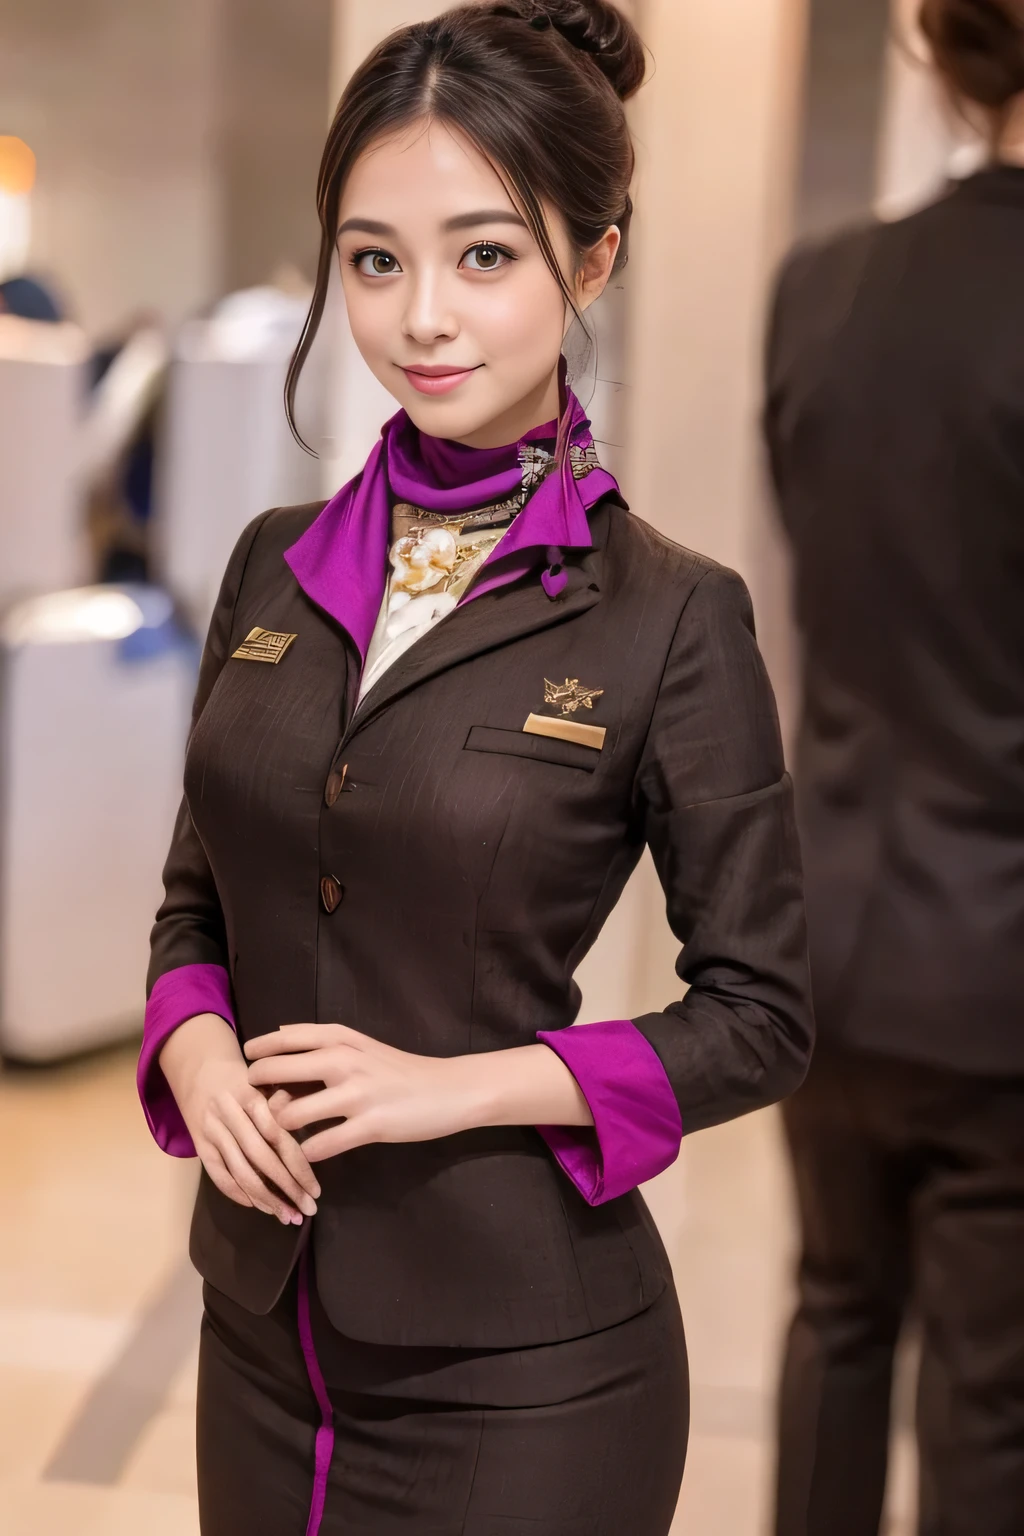 (chef-d&#39;œuvre:1.2、la plus haute qualité:1.2)、32K HDR、haute résolution、(seul、1 fille、silhouette mince)、（Une reproduction réaliste de l&#39;uniforme du personnel de cabine d&#39;ETIHAD Airways）、 (Au comptoir de l&#39;aéroport, Éclairage professionnel)、Fond de mur de comptoir d&#39;aéroport、Une vraie femme, Beau visage,、（Uniforme du personnel de cabine à manches longues d&#39;ETIHAD Airways）、（Jupe d&#39;uniforme ETIHAD Airways Cabincrew avec bande violette sur le devant）、（foulard sur la poitrine）、Gros seins、（Cheveux longs、Chignon）、les cheveux brun foncé、Tir lointain、（（De belles mains：2.0））、（（Des proportions corporelles harmonieuses：1.5））、（（Membres normaux：2.0））、（（Doigt normal：2.0））、（（Yeux délicats：2.0））、（（Yeux normaux：2.0））)、Belle posture debout、sourire、Placez vos mains autour de votre ventre